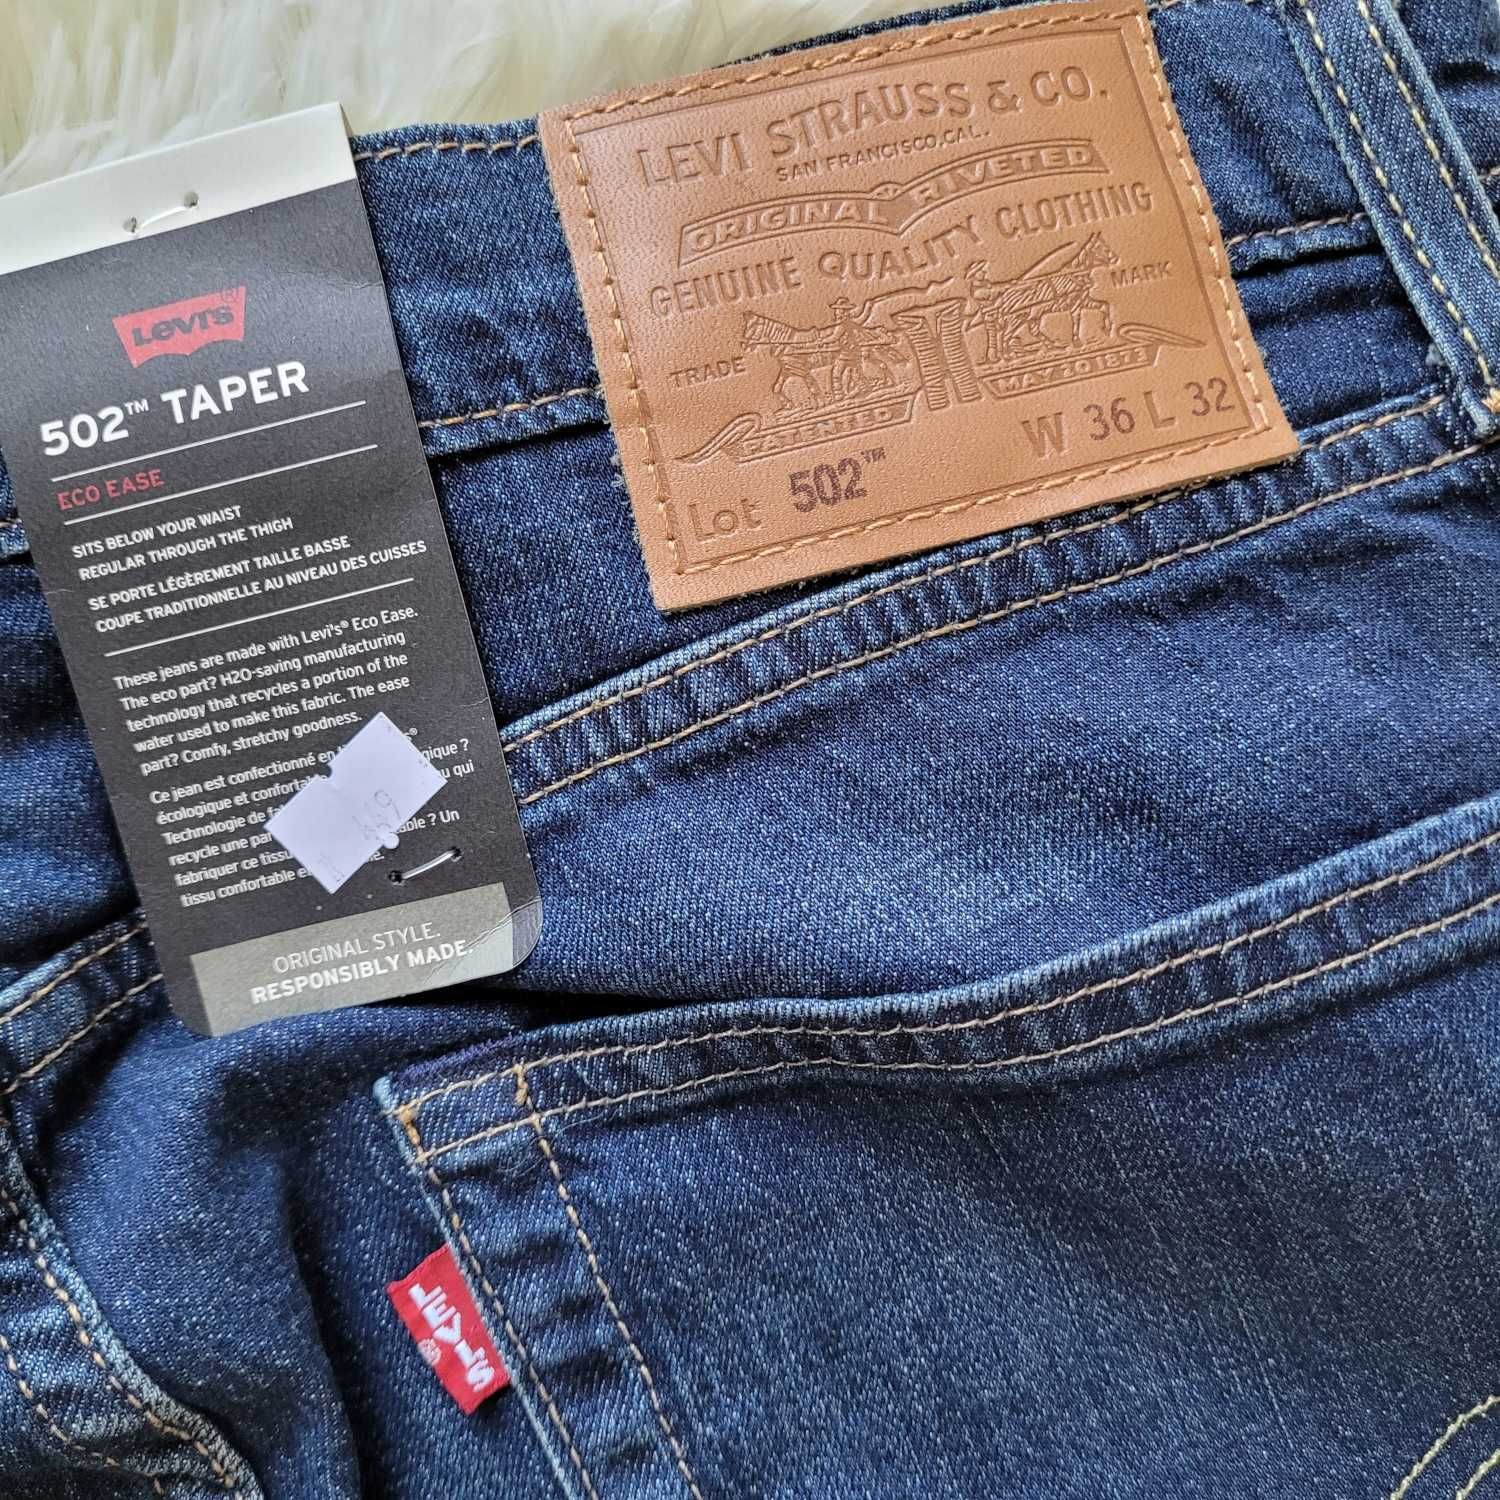 spodnie jeans Levi's 502 Taper W36 L32 36x32 Premium